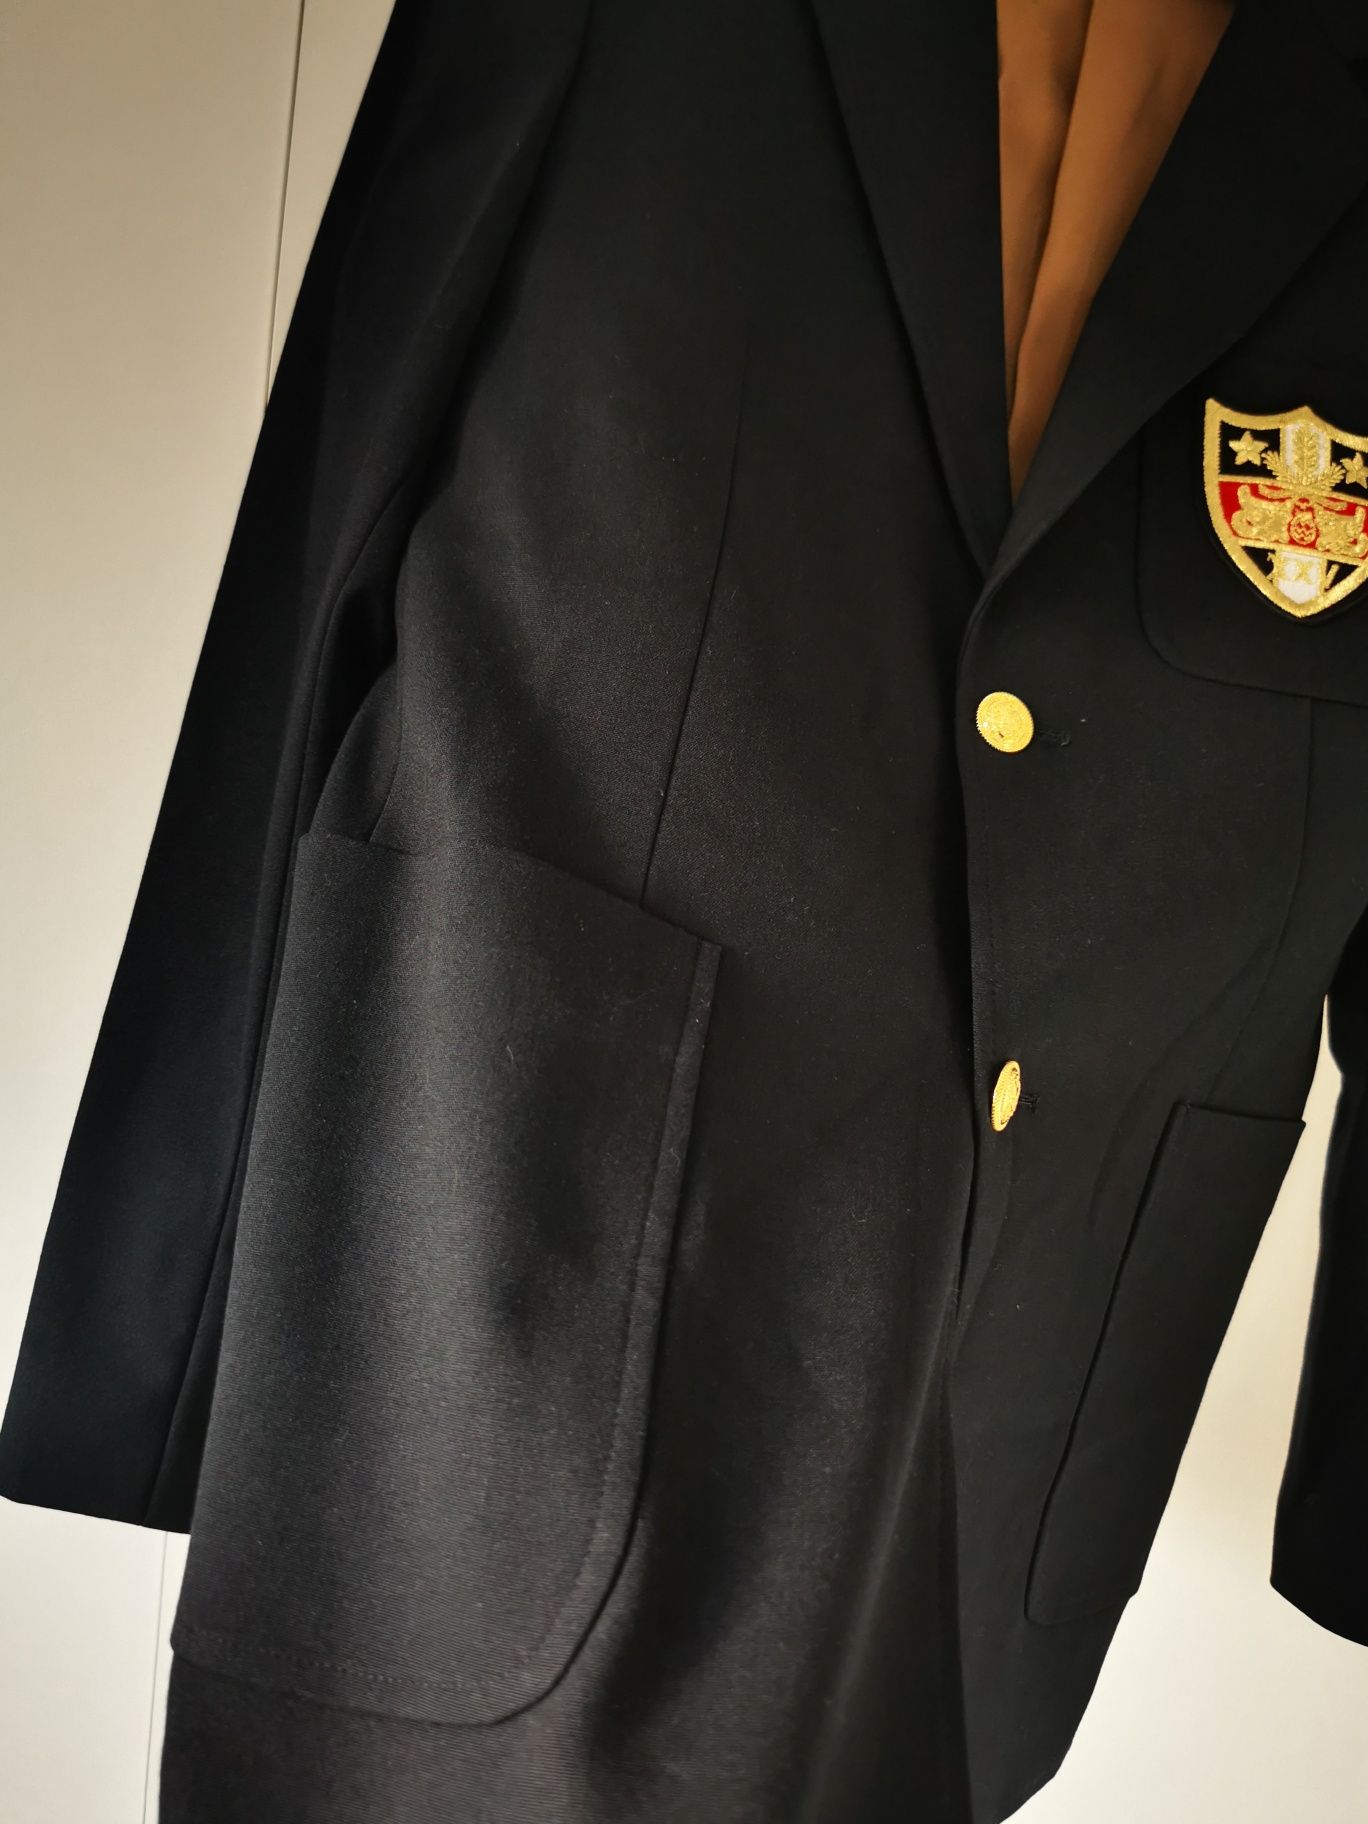 Marynarka Gucci dres chateau Marmont hollywood jacket